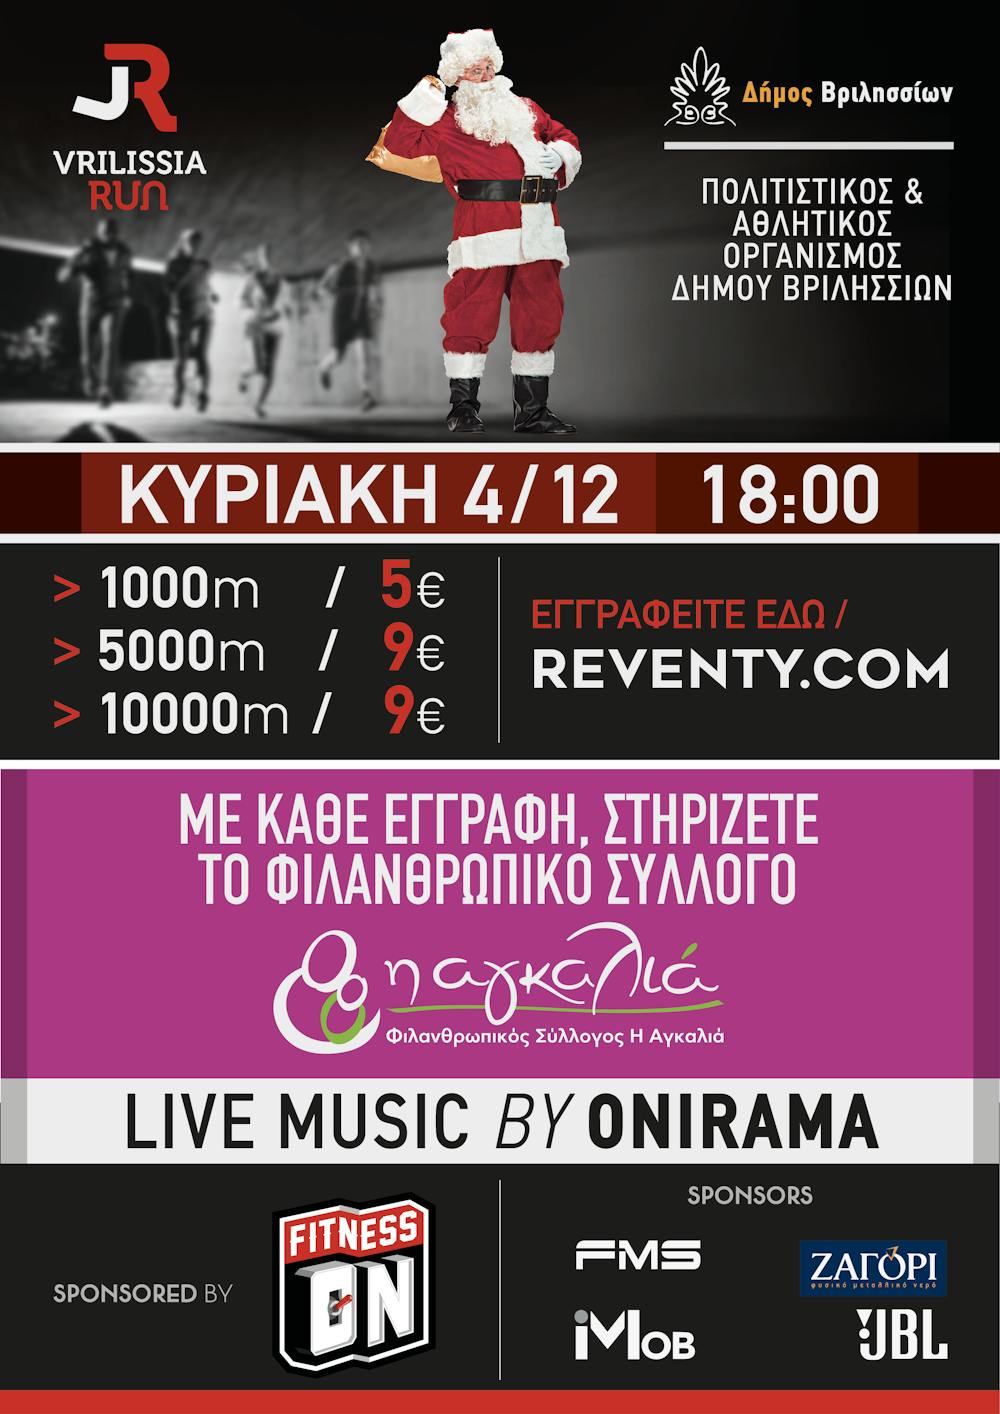 Στις 4 Δεκεμβρίου το Vrilissia Run με τη συμμετοχή των Onirama και μια «Αγκαλιά» για μικρούς και μεγάλους runbeat.gr 